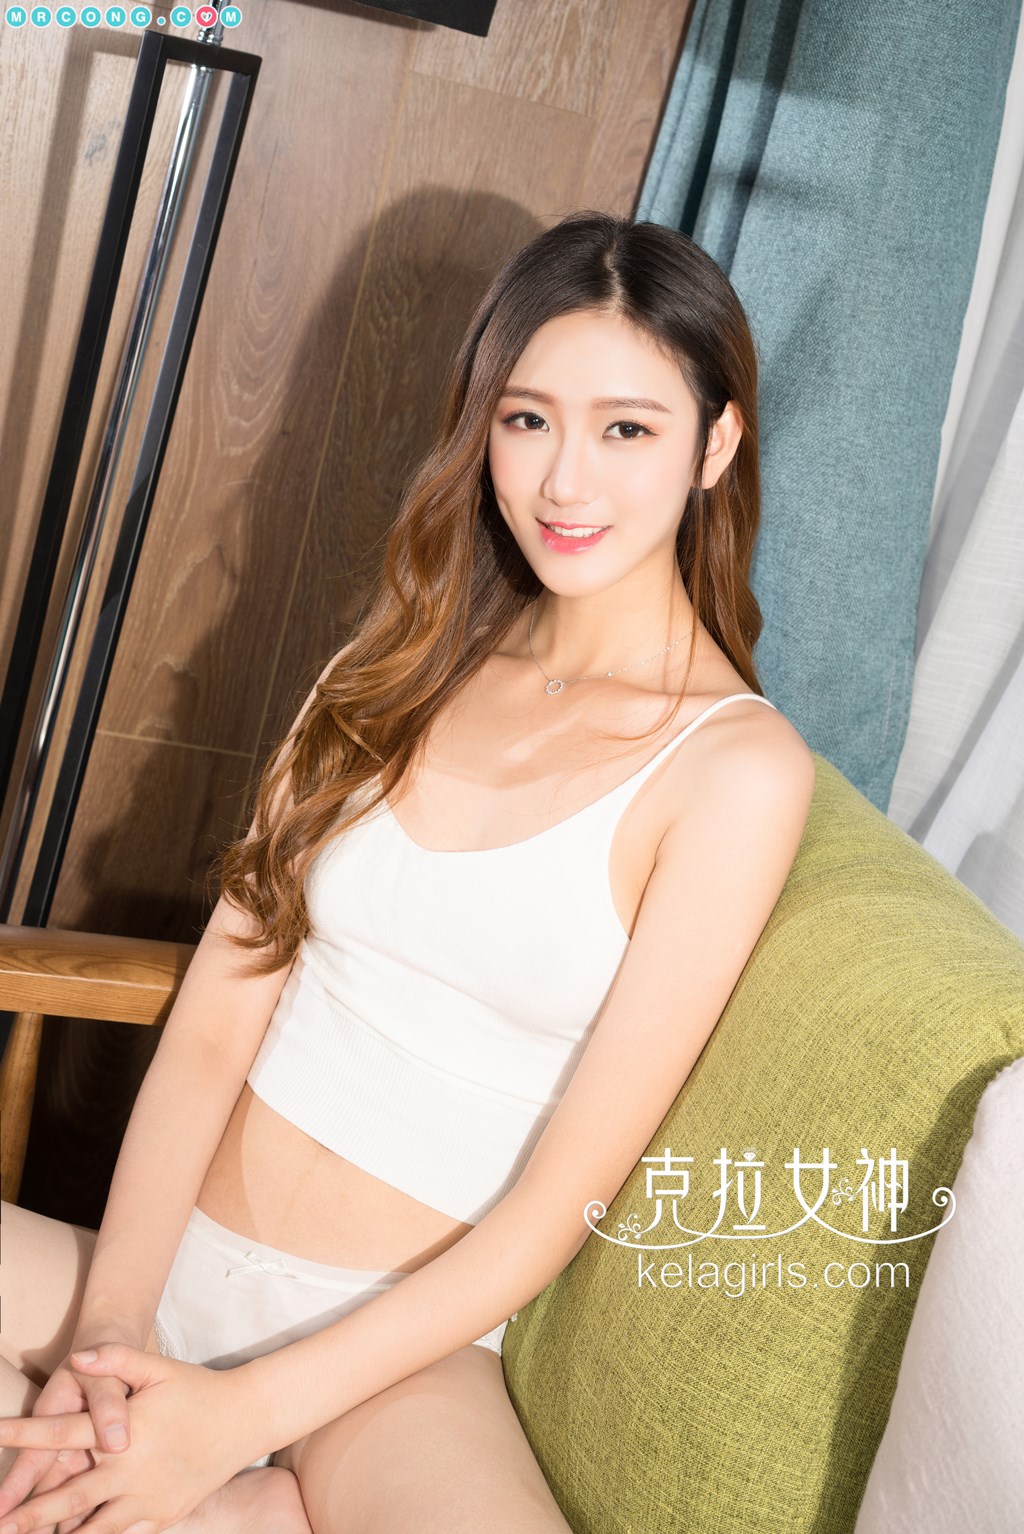 KelaGirls 2017-11-25: Model Jing Yi (景 亦) (26 pictures) photo 1-2